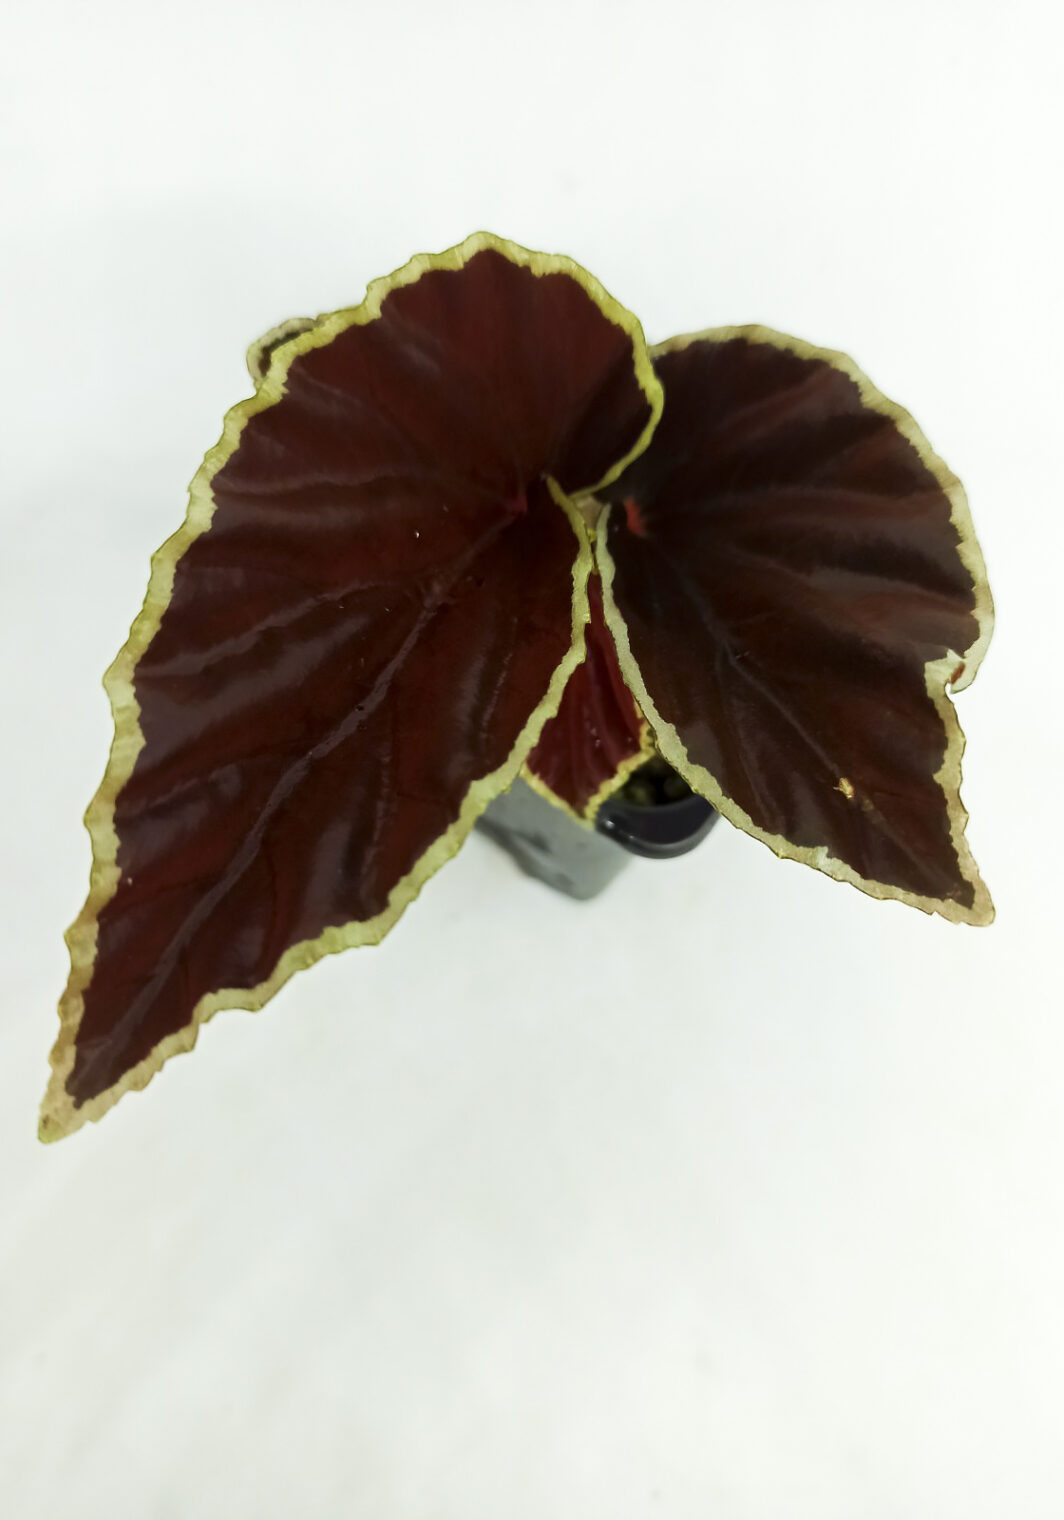 Begonia darthvaderiana (Begonia Darth Vader)